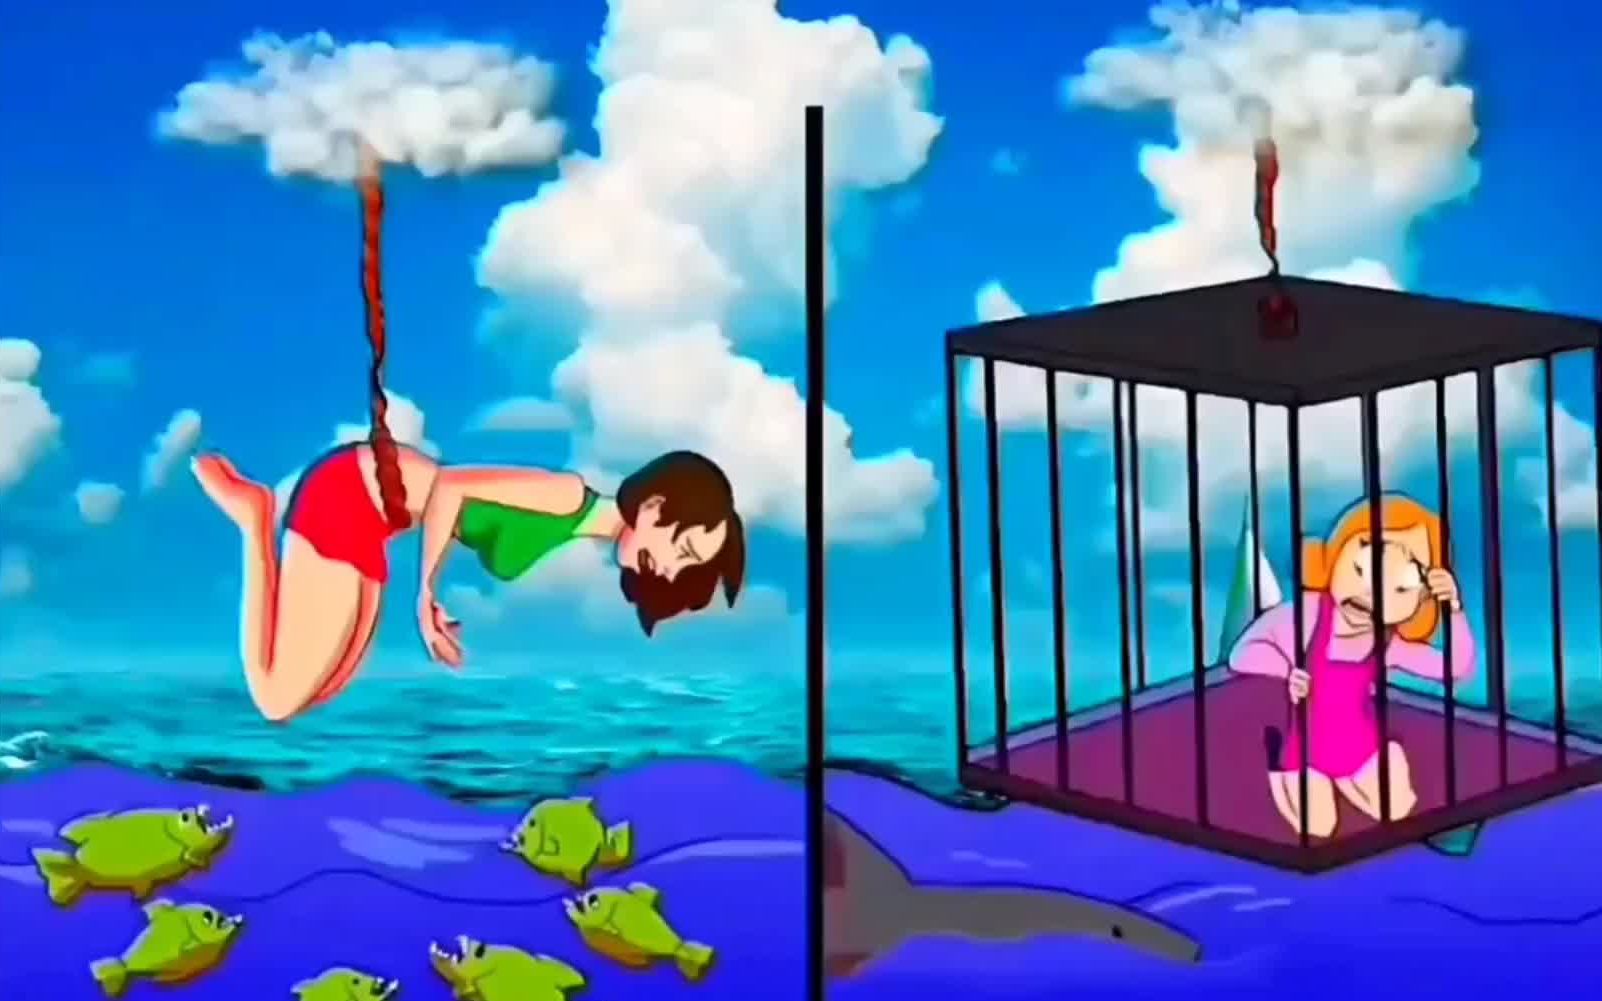 益智推理动画：仔细观察，动漫中水里面有大鲨鱼，到底哪个女人更危险呢？